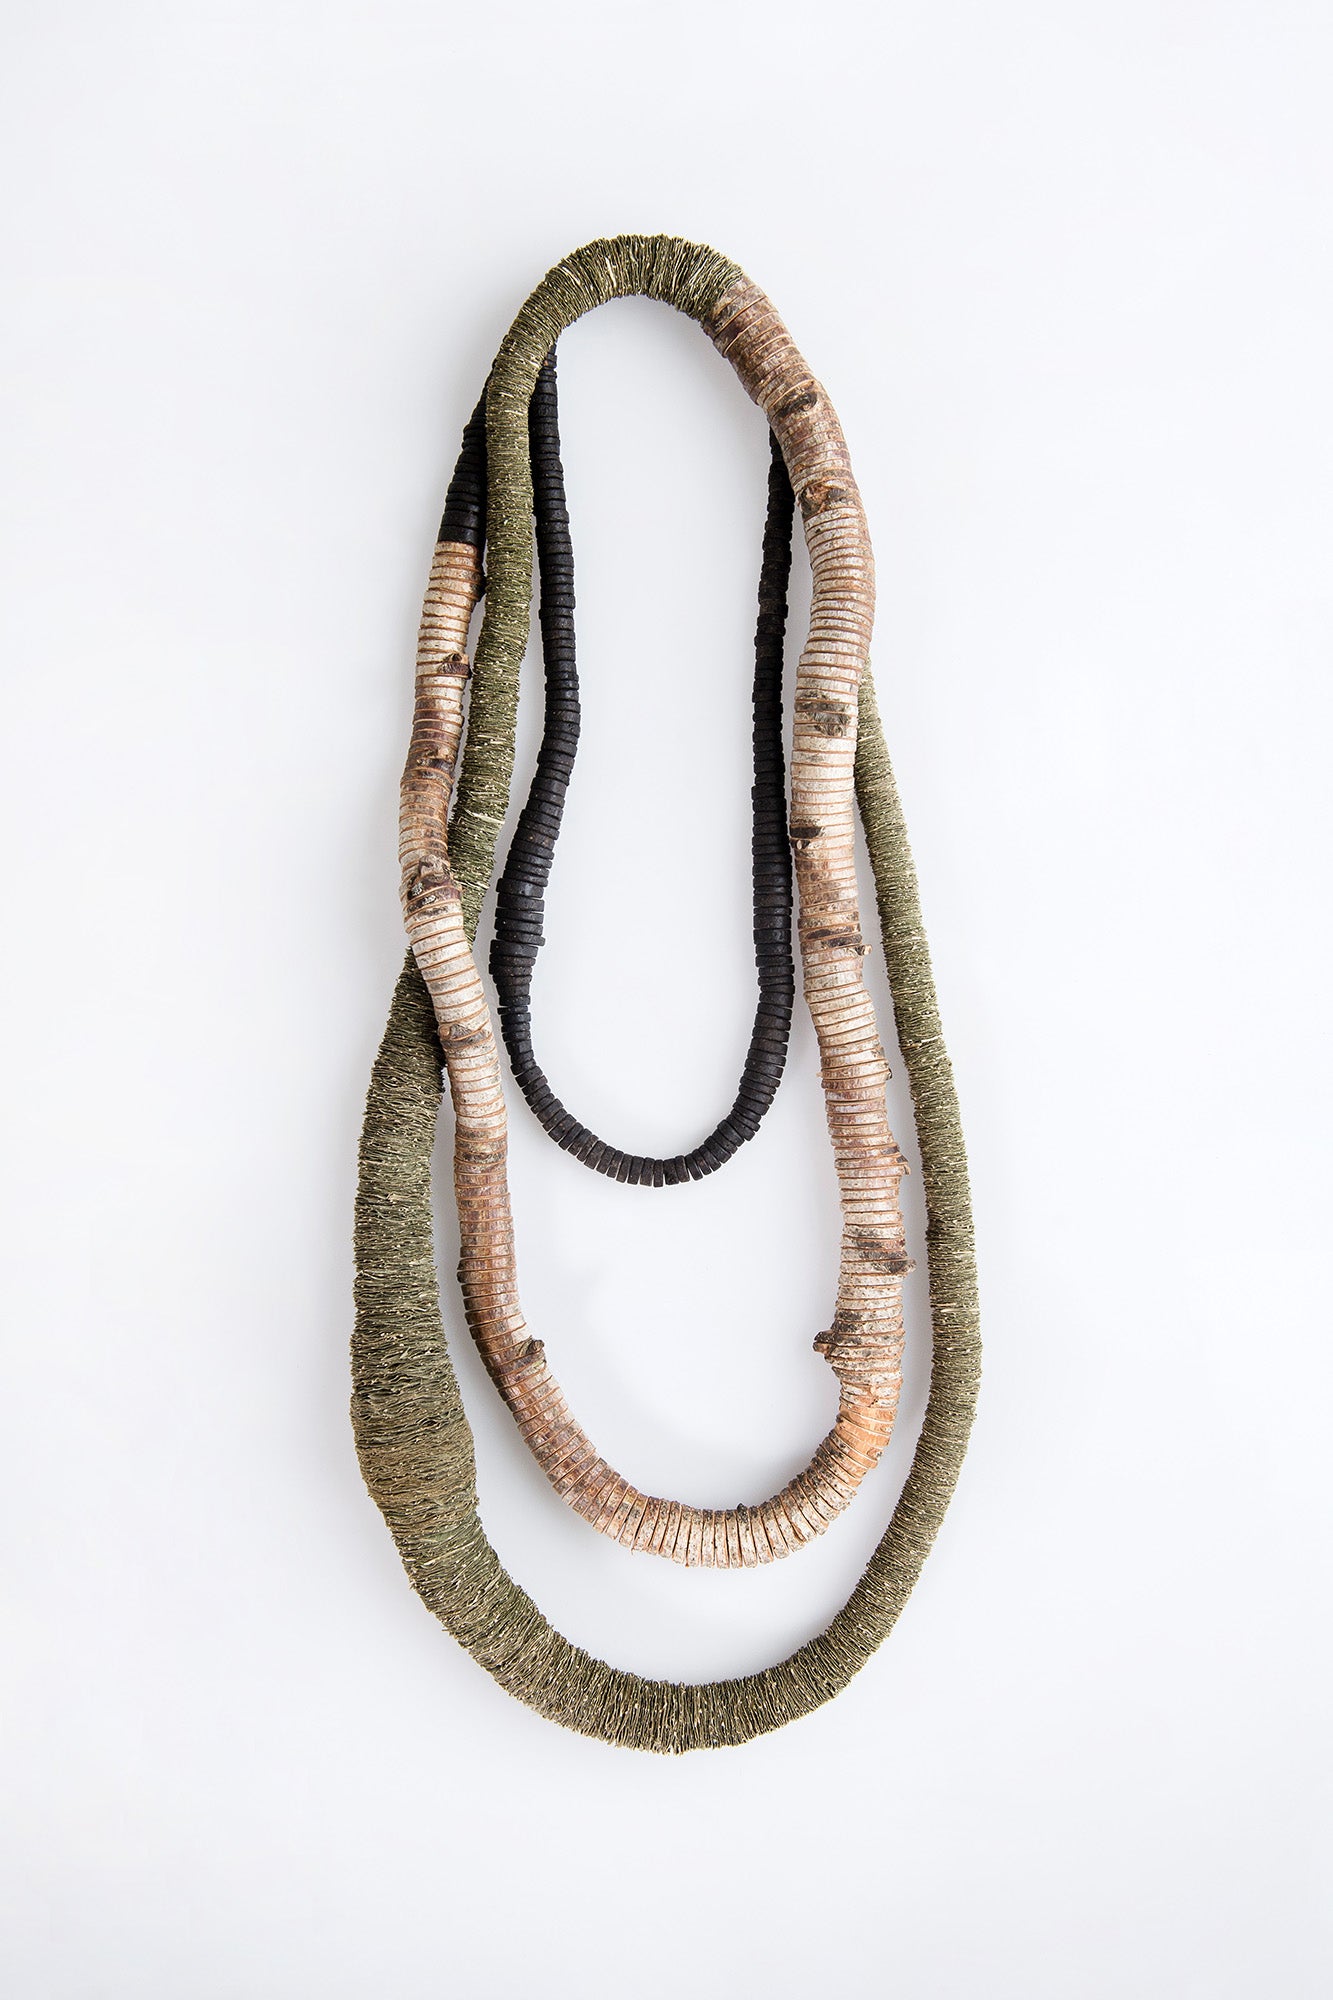 3-reihige Halskette aus Erde, Birkenholz und Ahornblättern.